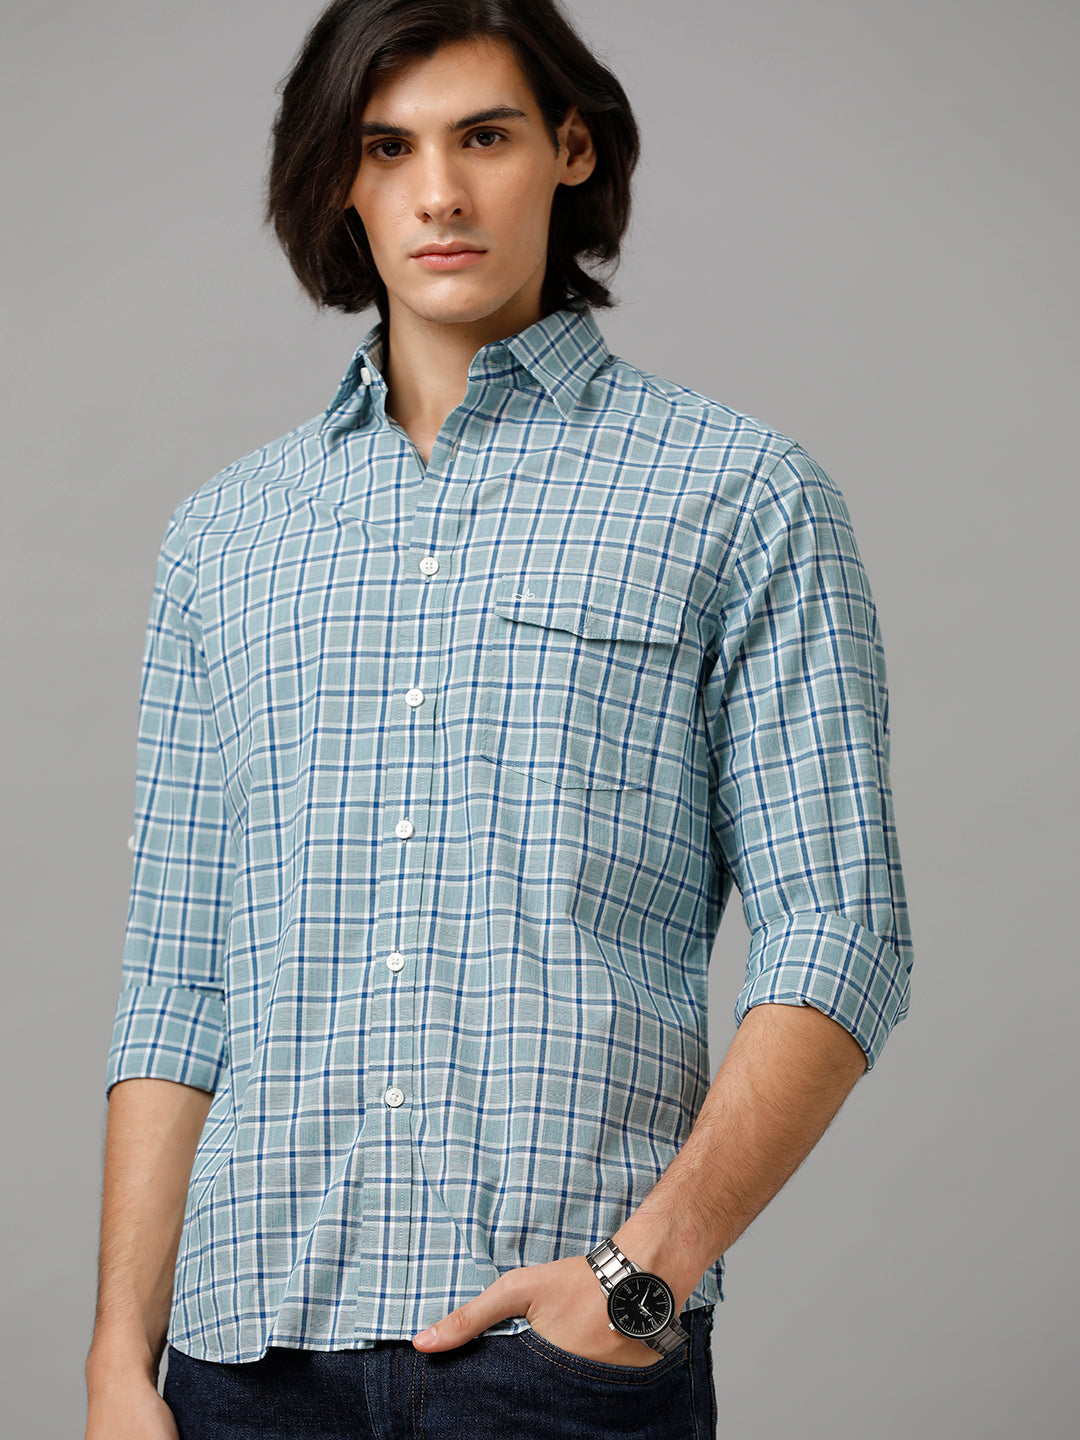 Aldeno Checkered Casual Green & Navy Shirt For Men